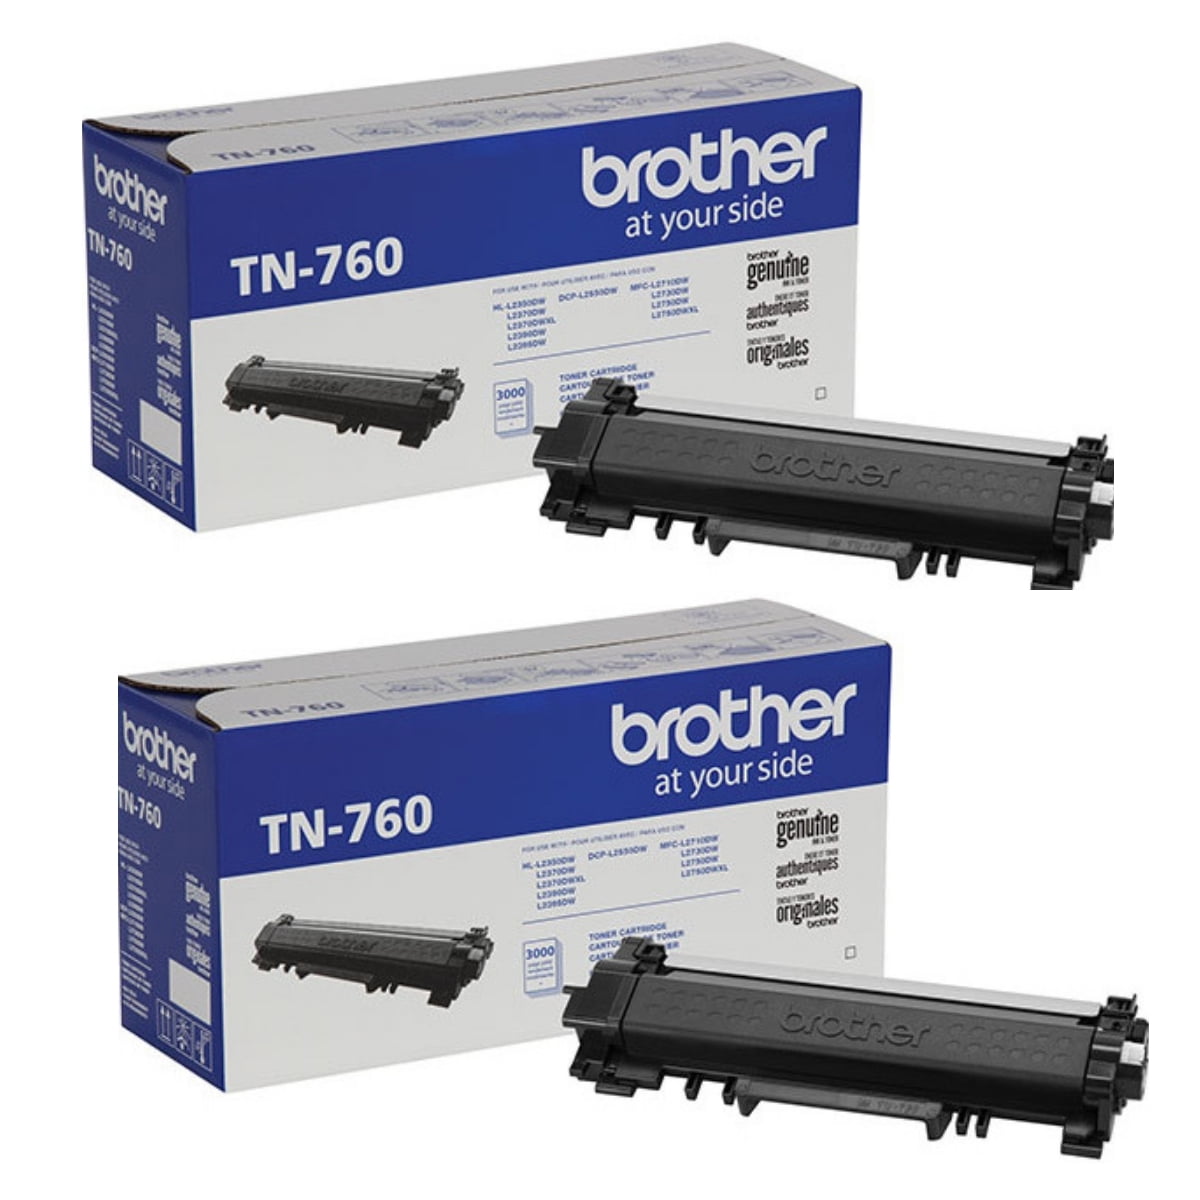 Reset toner cartridge Brother TN-2410 TN-2420 TN-430 TN-760 